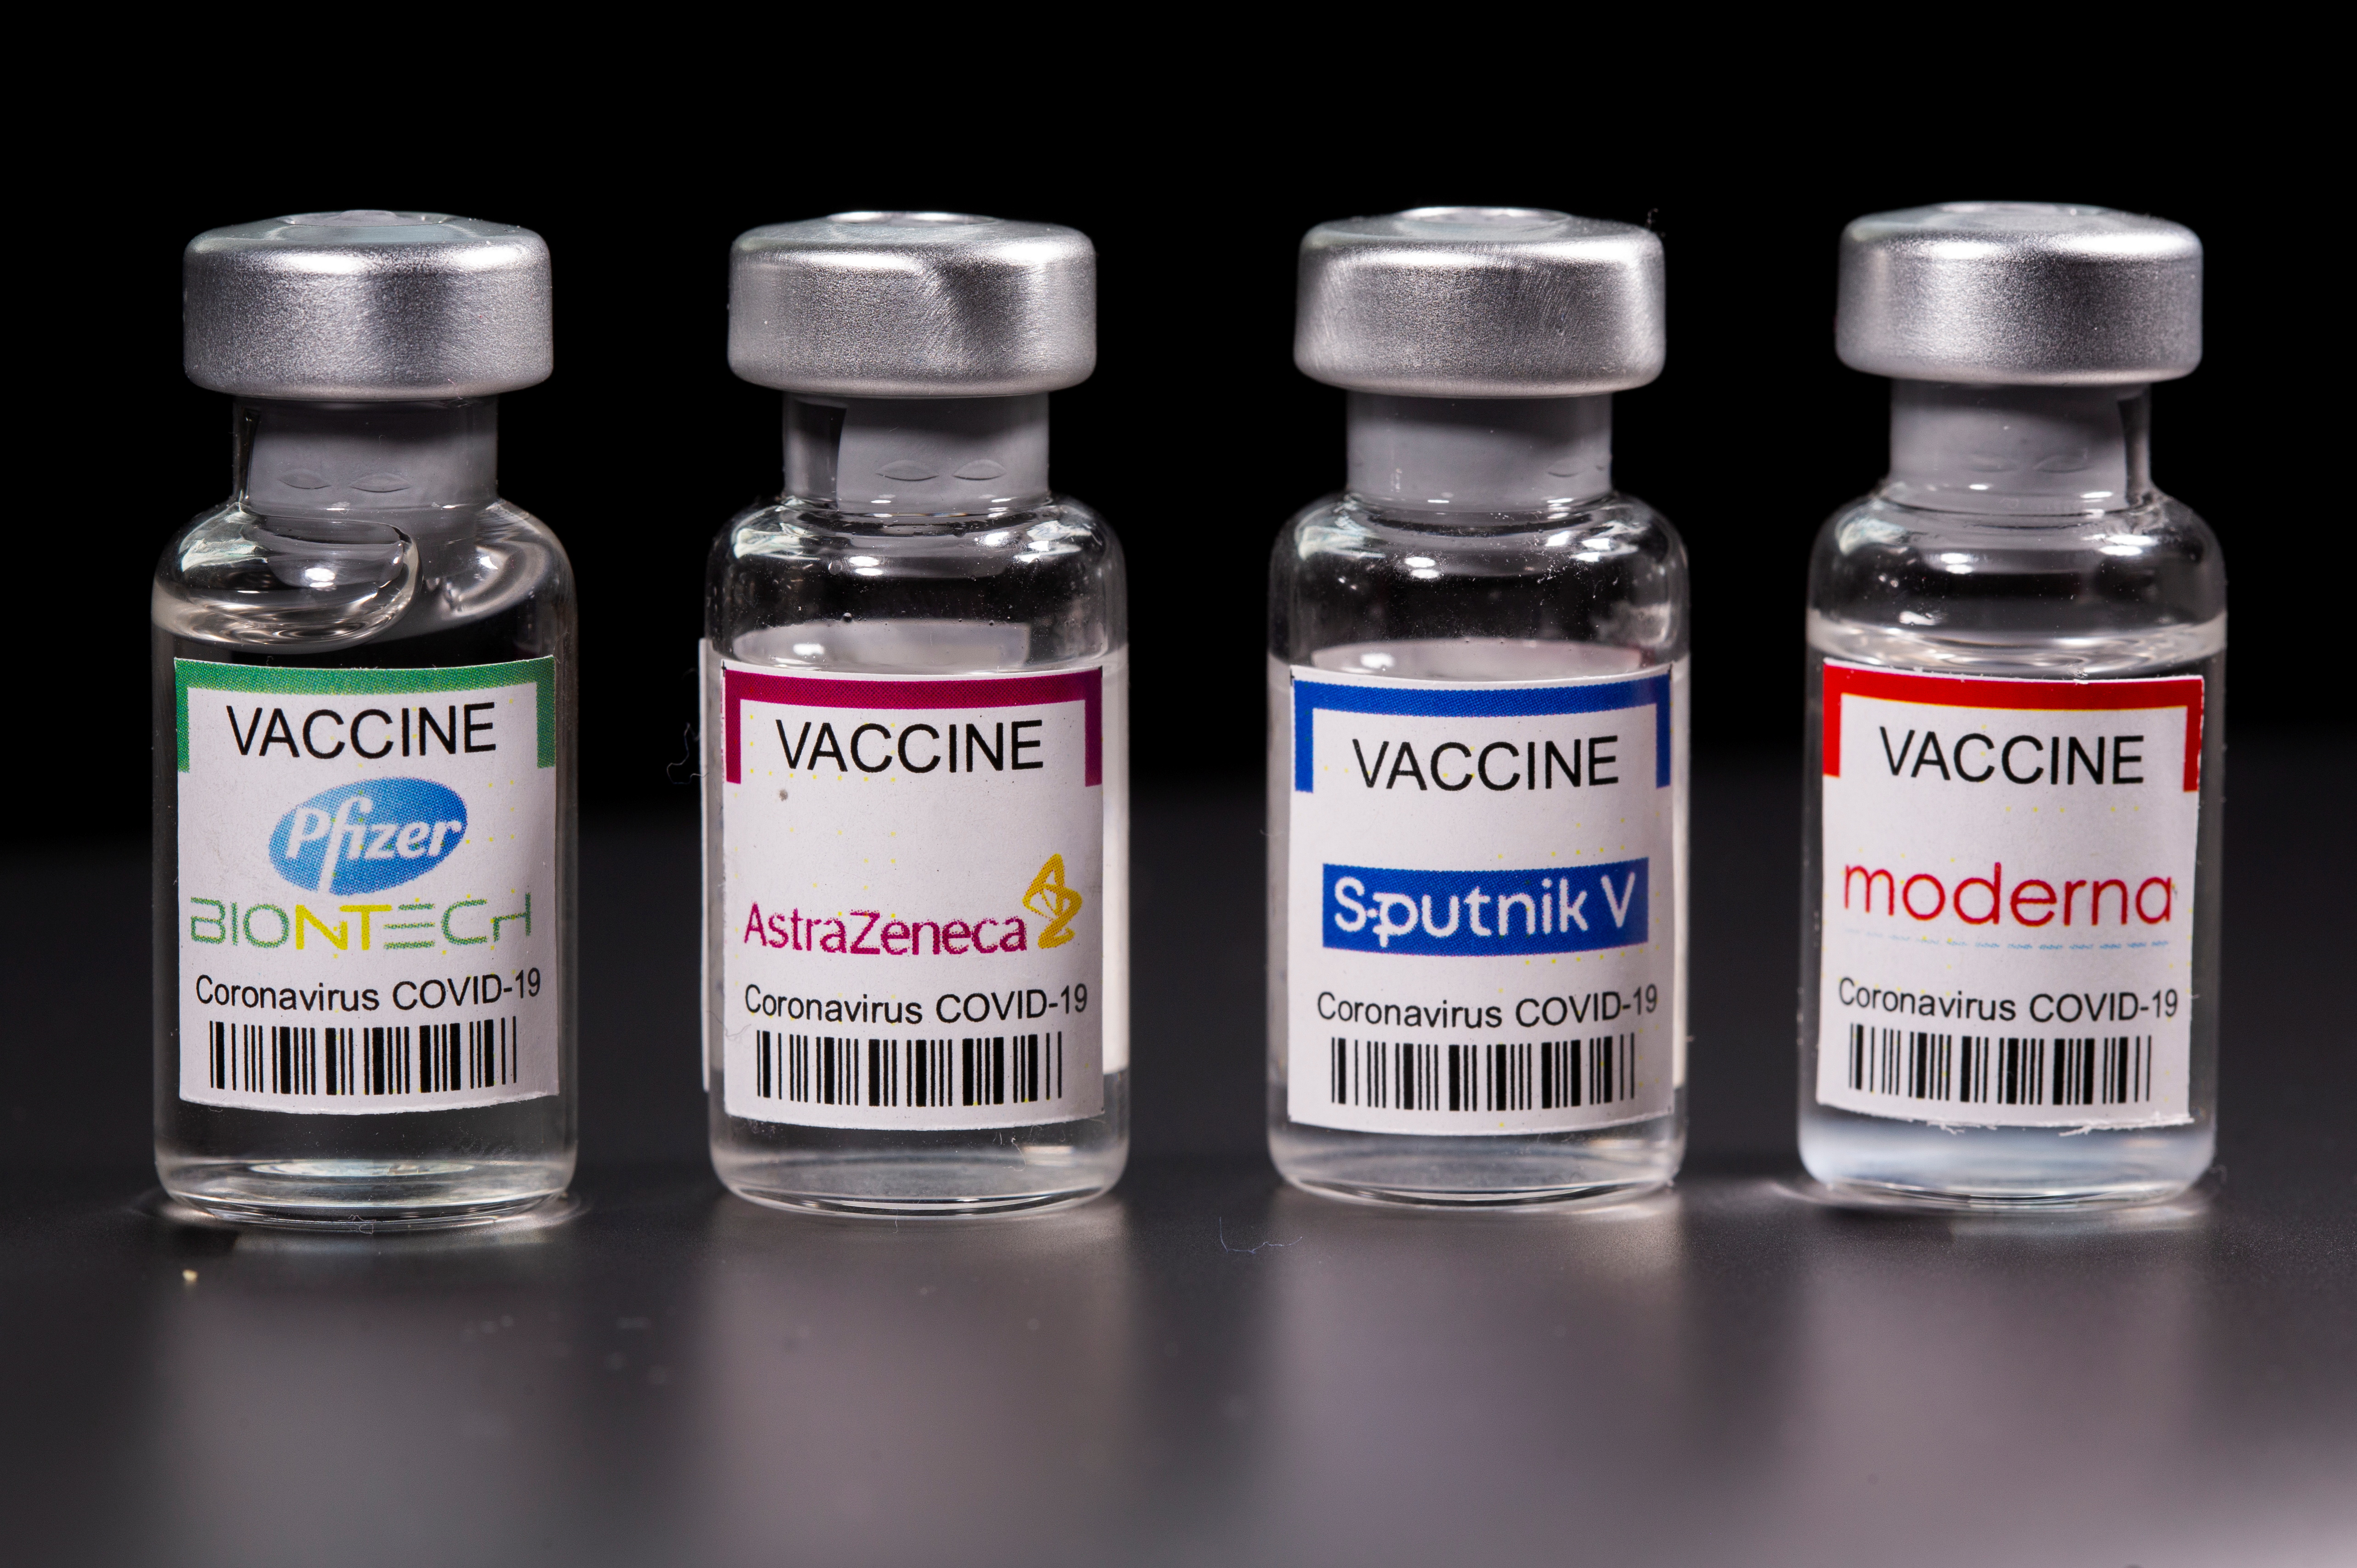 Les Etats-Unis sont favorables à la levée des brevets sur les vaccins anti-Covid